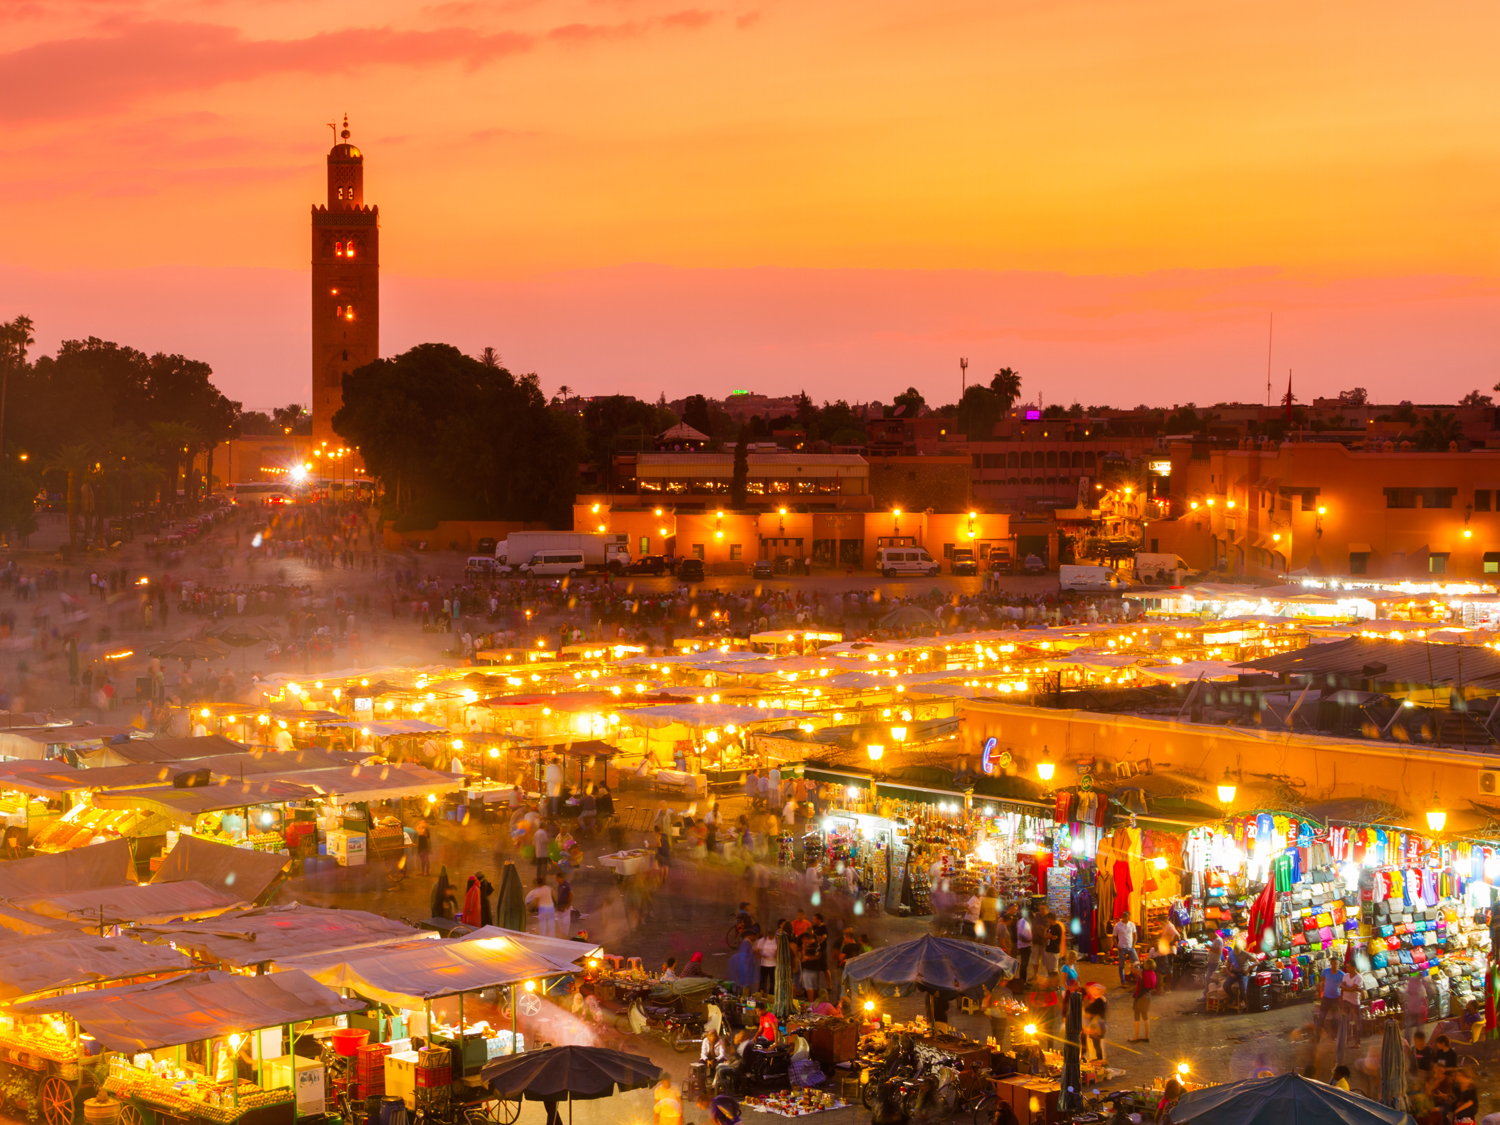 Day 7 - Marrakech & Djemaa el Fna